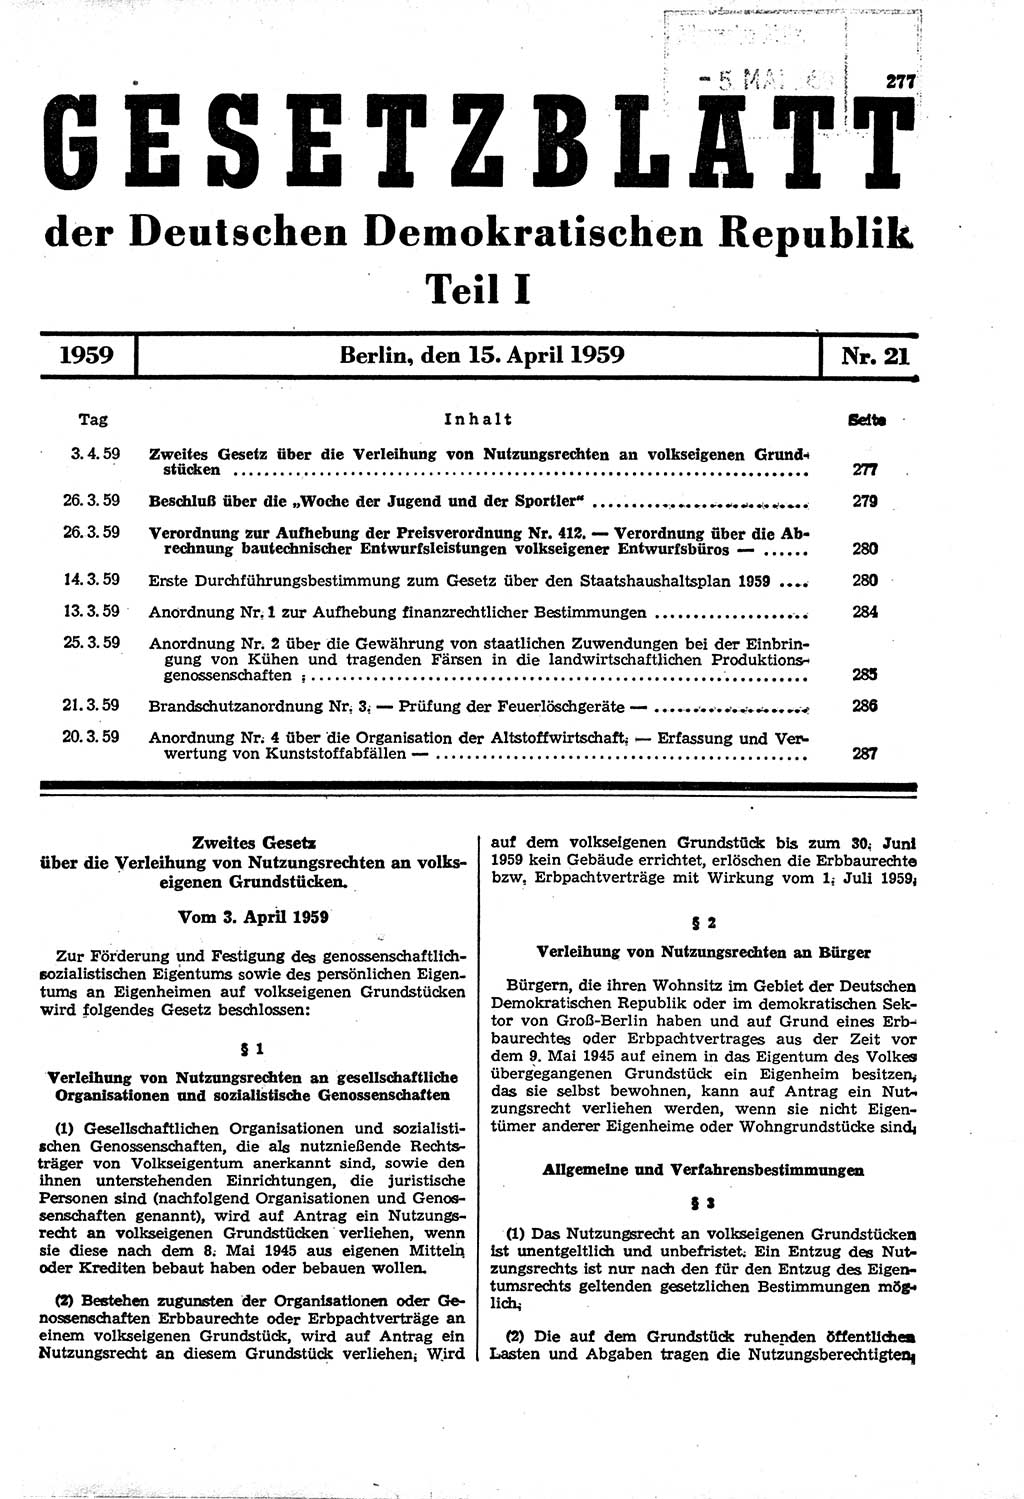 Gesetzblatt (GBl.) der Deutschen Demokratischen Republik (DDR) Teil Ⅰ 1959, Seite 277 (GBl. DDR Ⅰ 1959, S. 277)